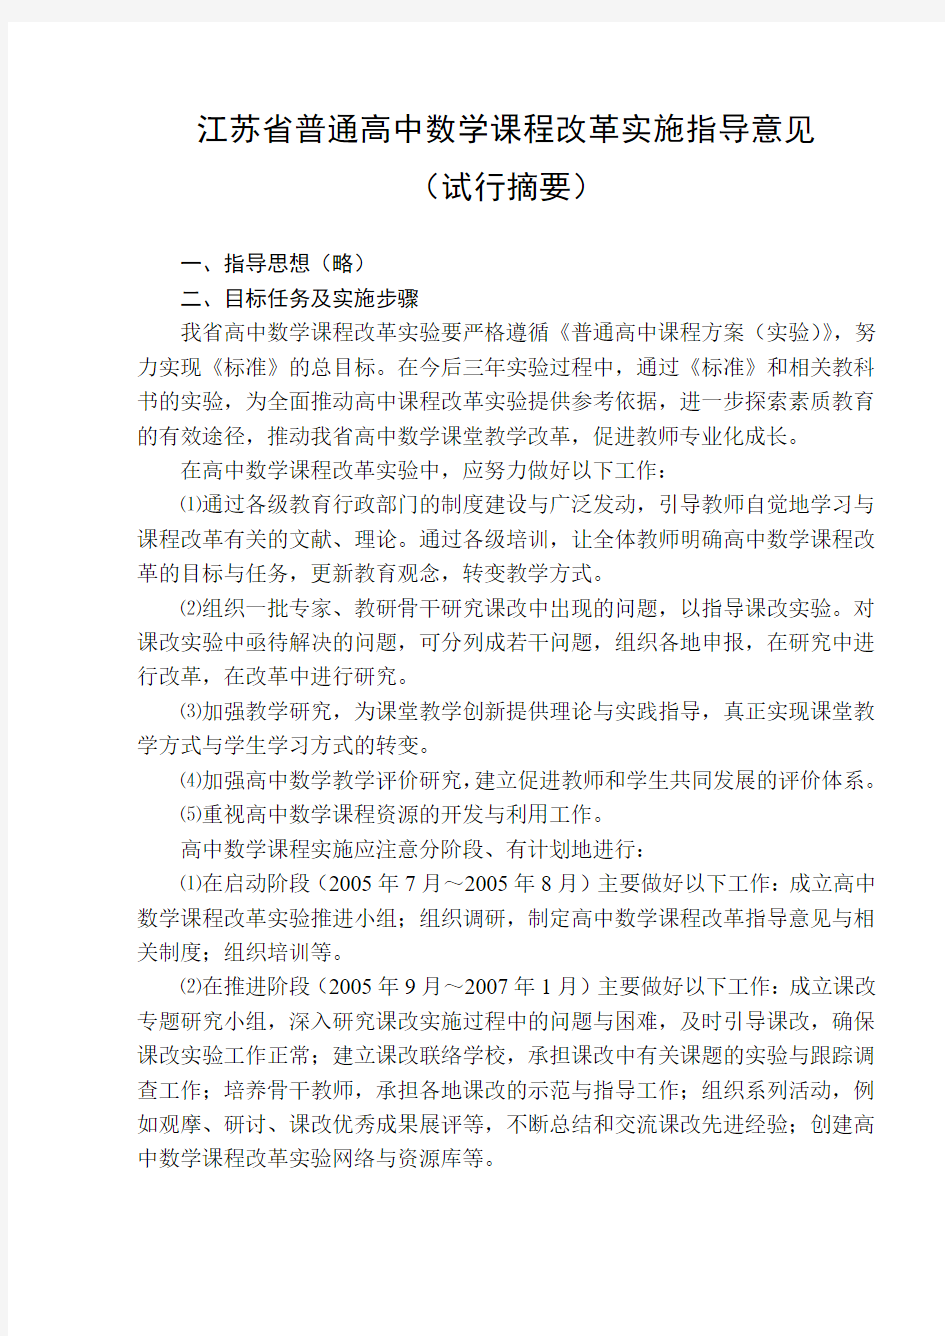 江苏省普通高中数学课程改革实施指导意见